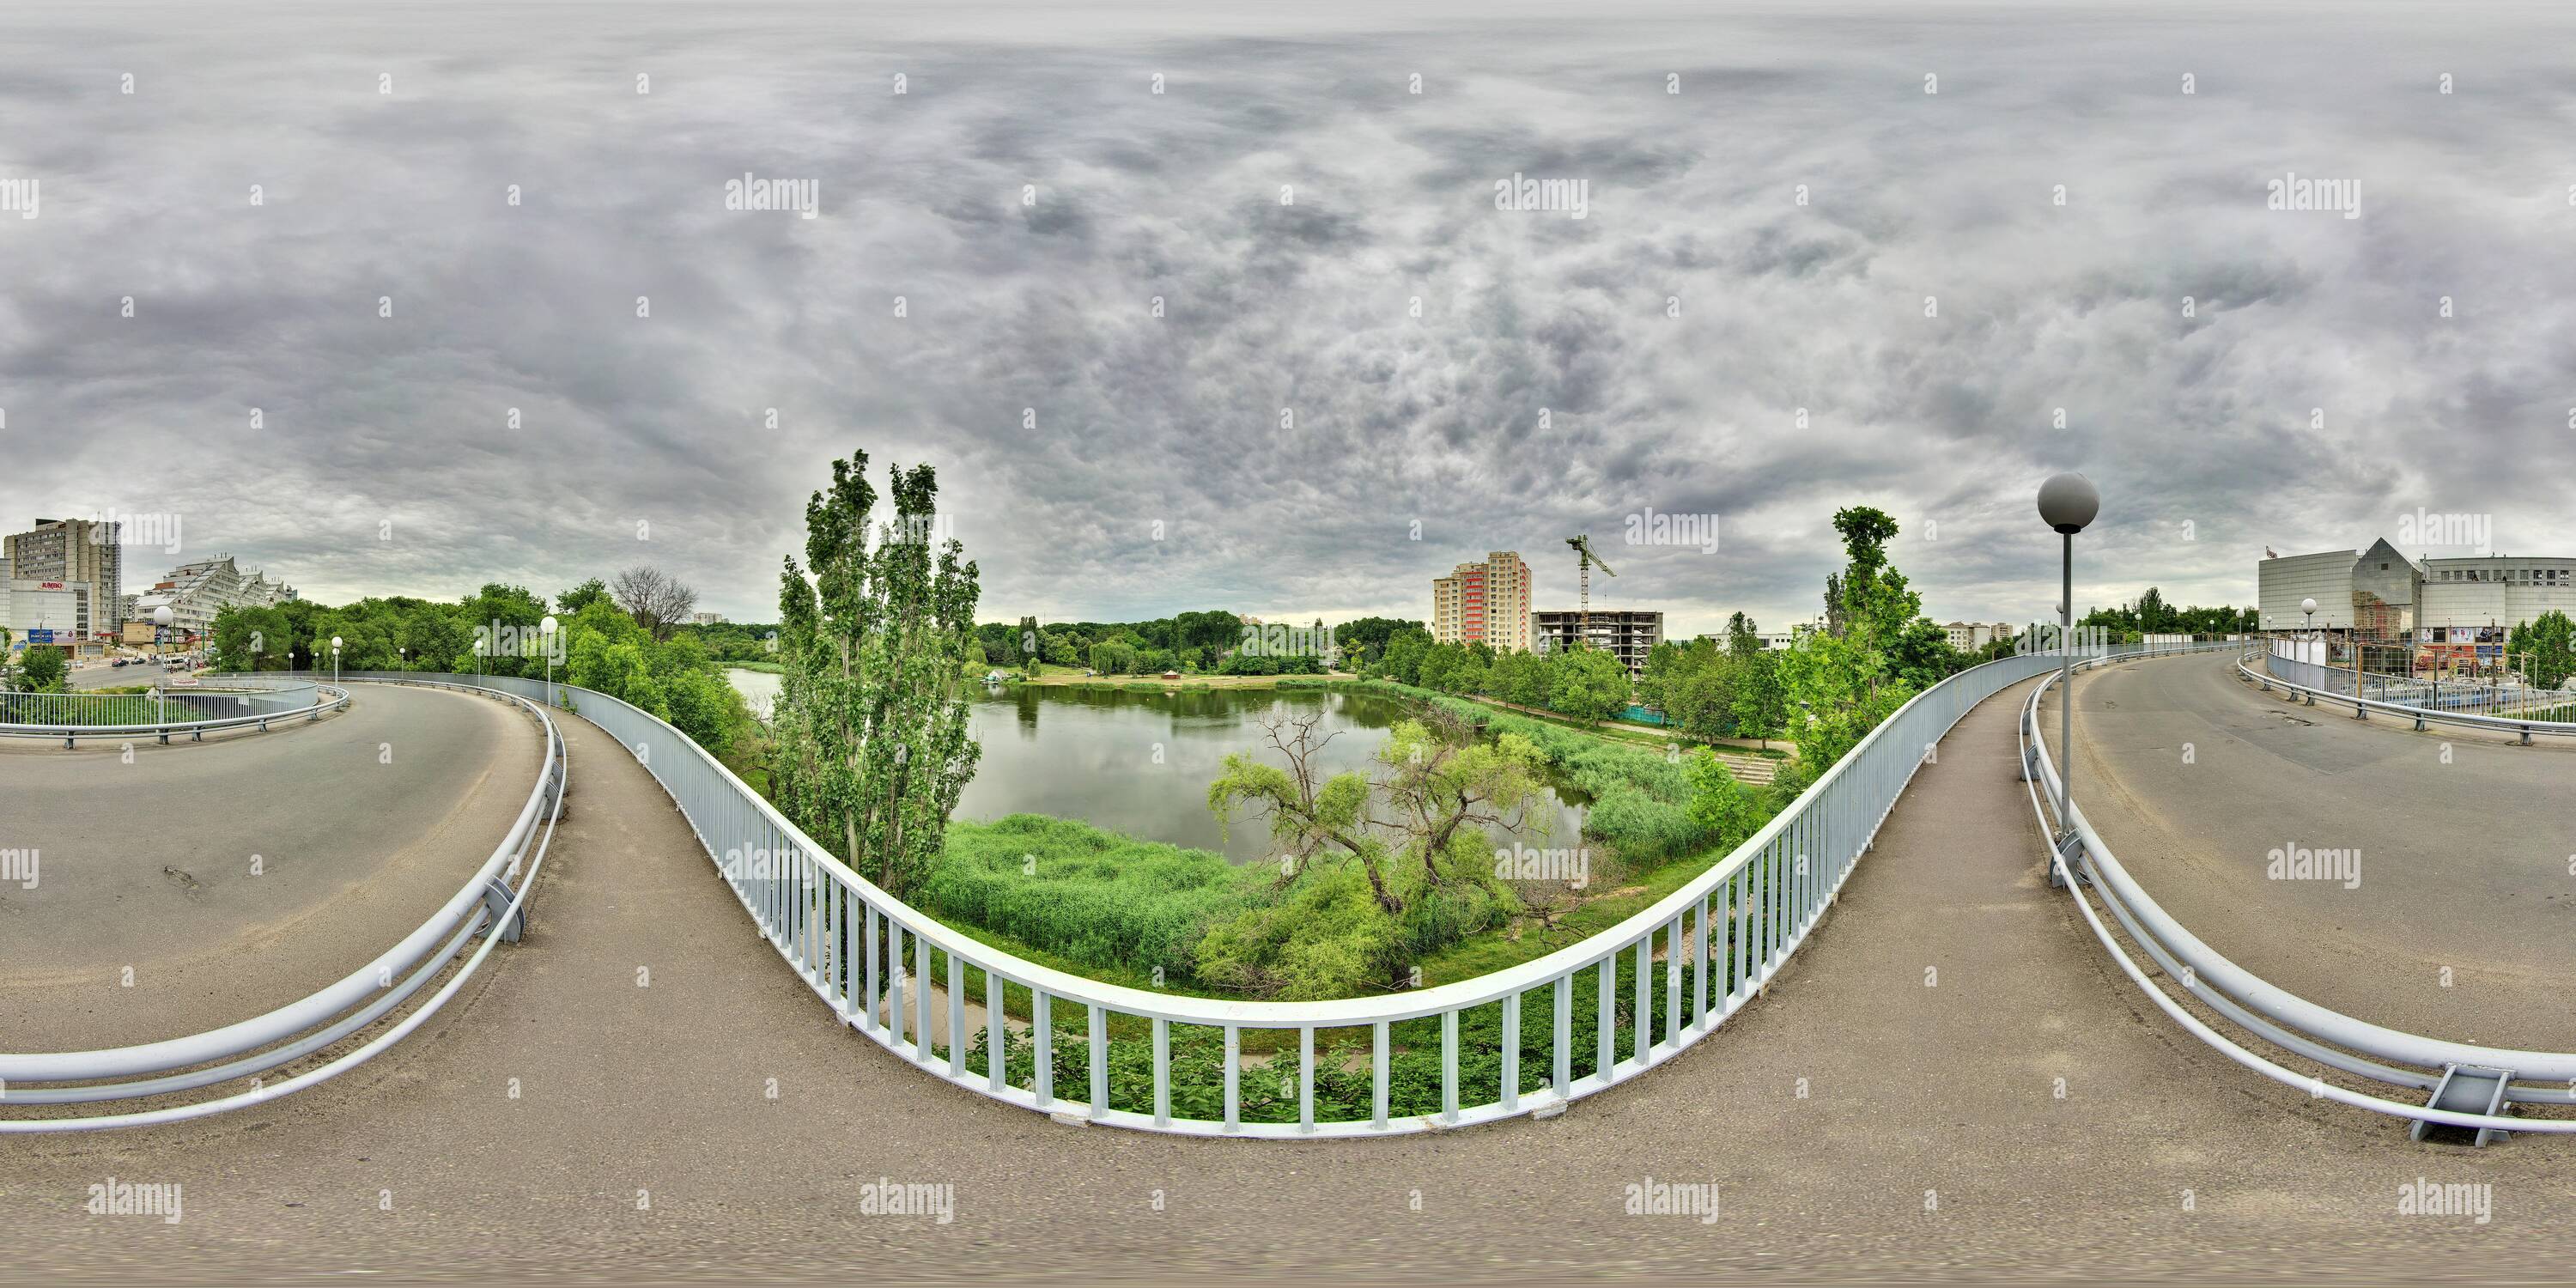 360 degree panoramic view of Jambo bridge 2010 06 17 kishinev moldova